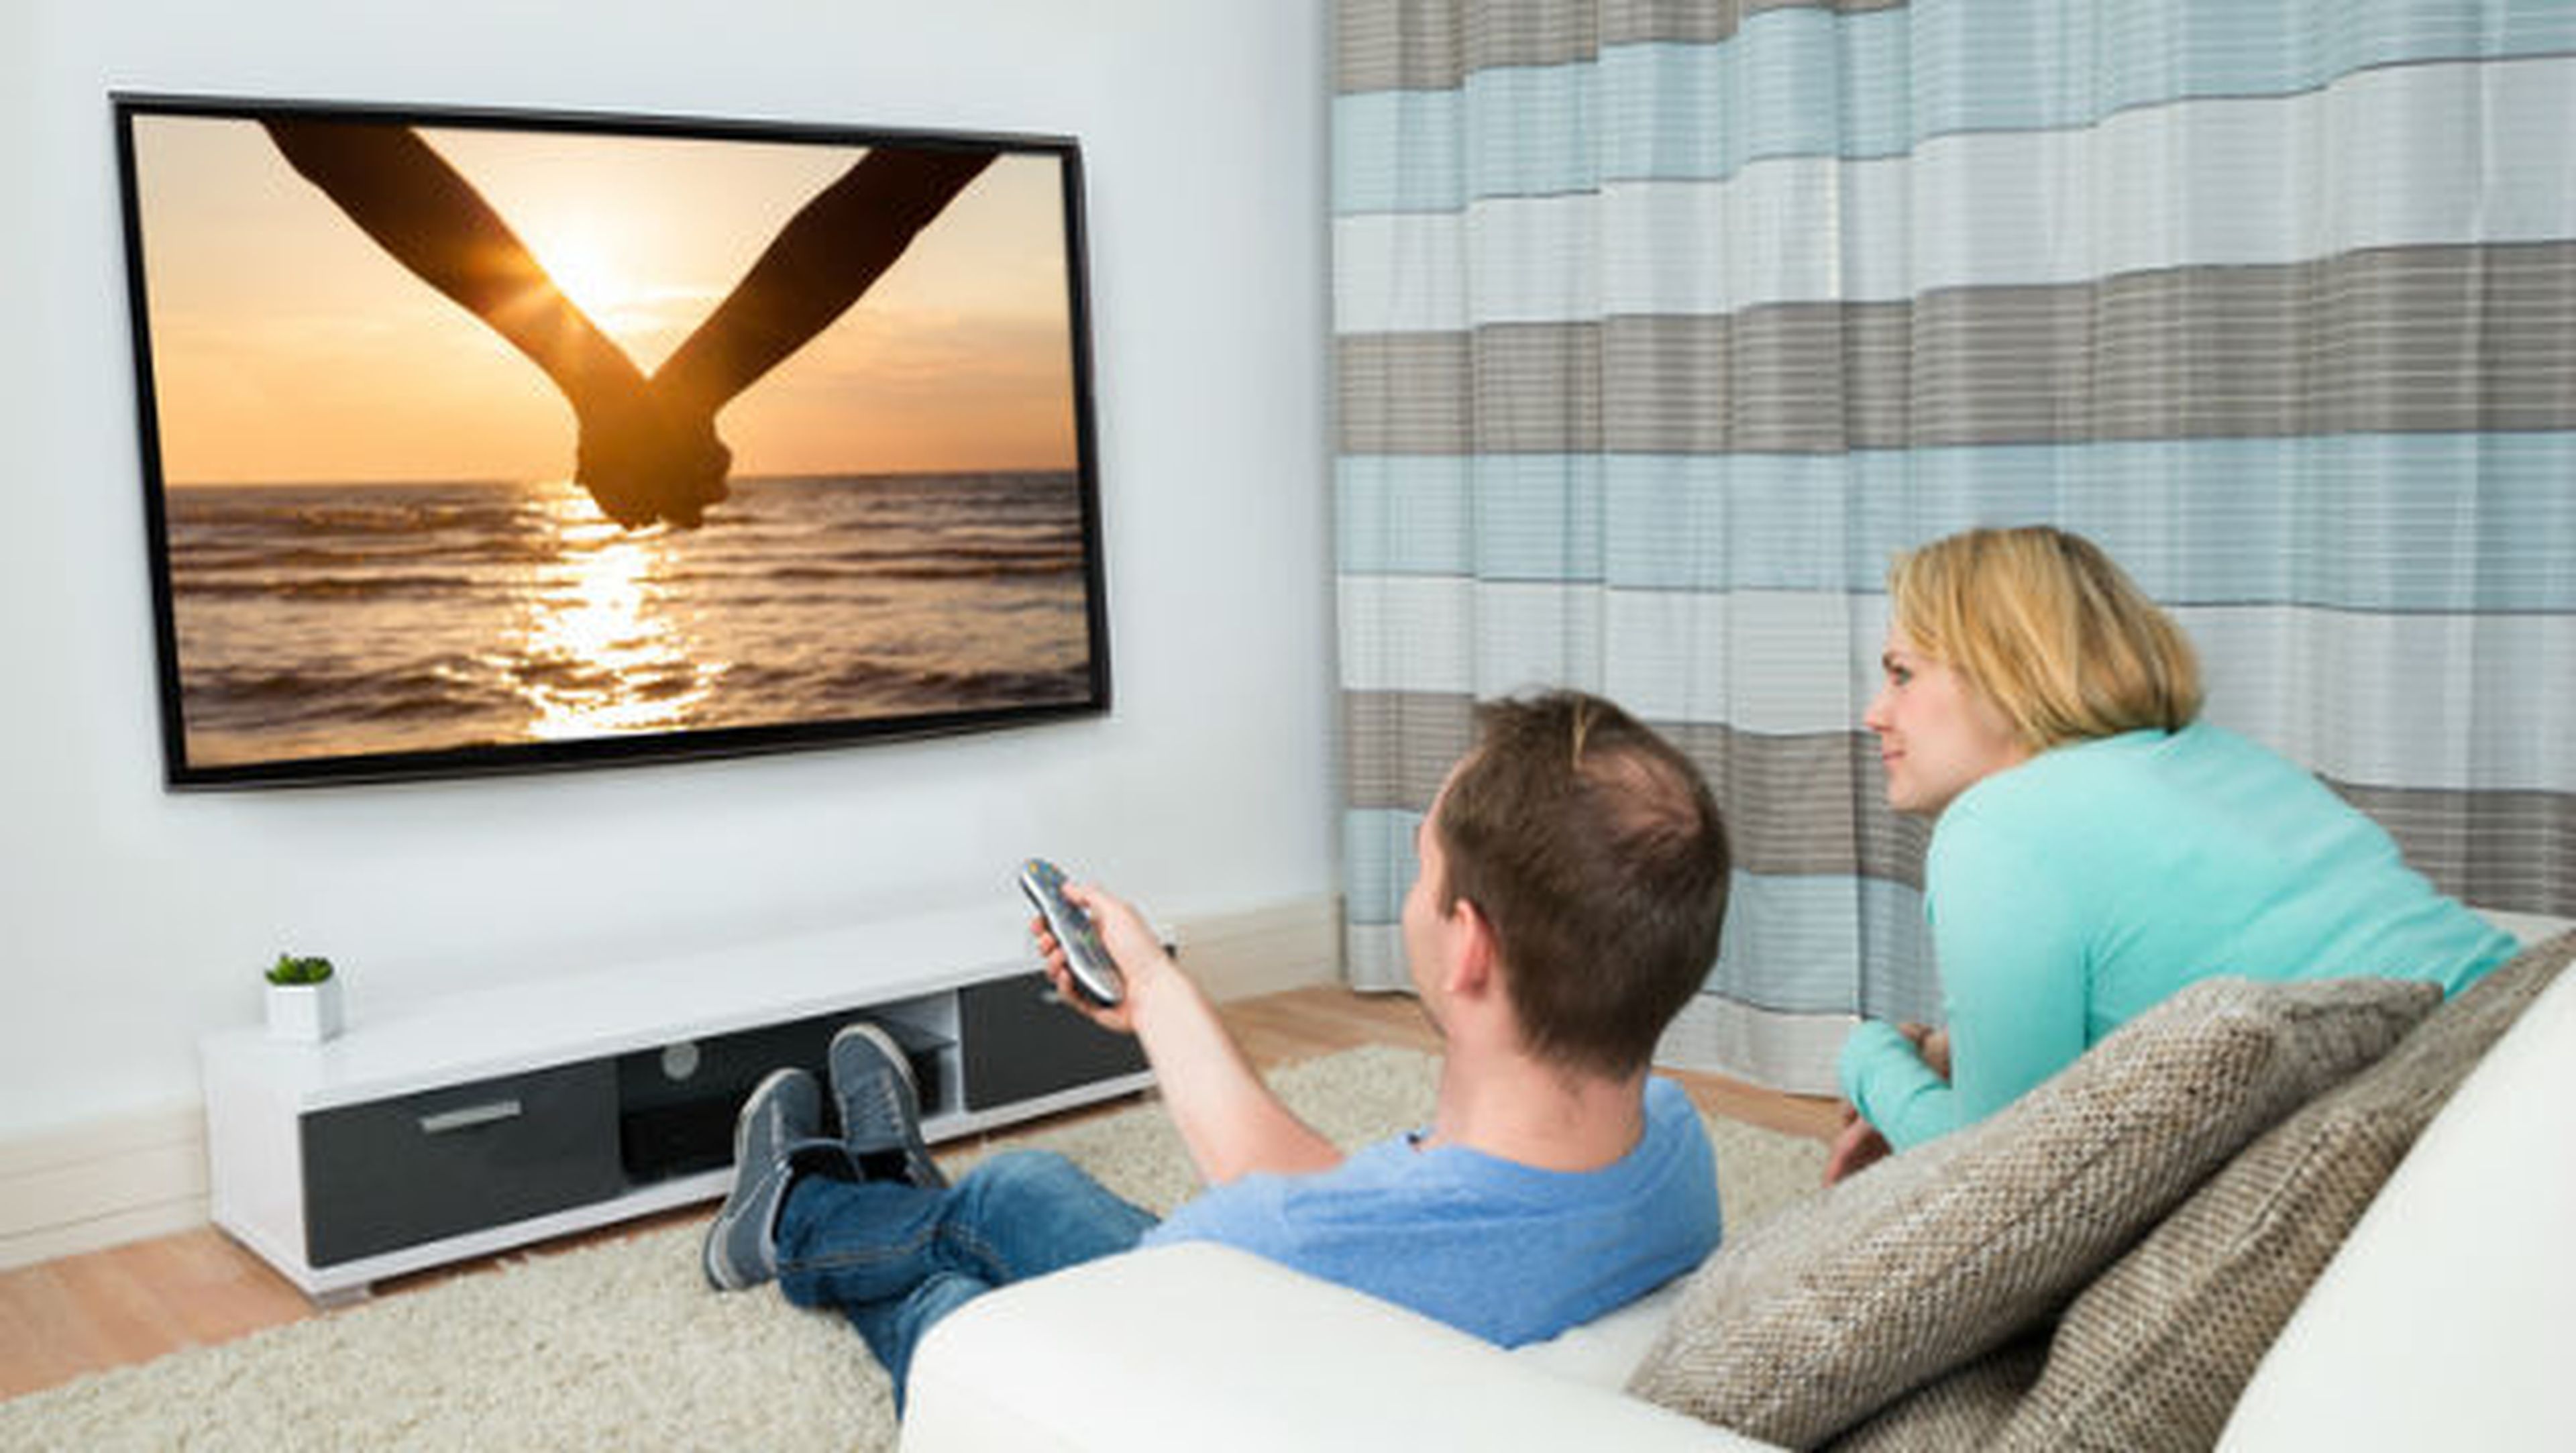 Motivos para comprar una TV 4K en 2018 o no hacerlo.